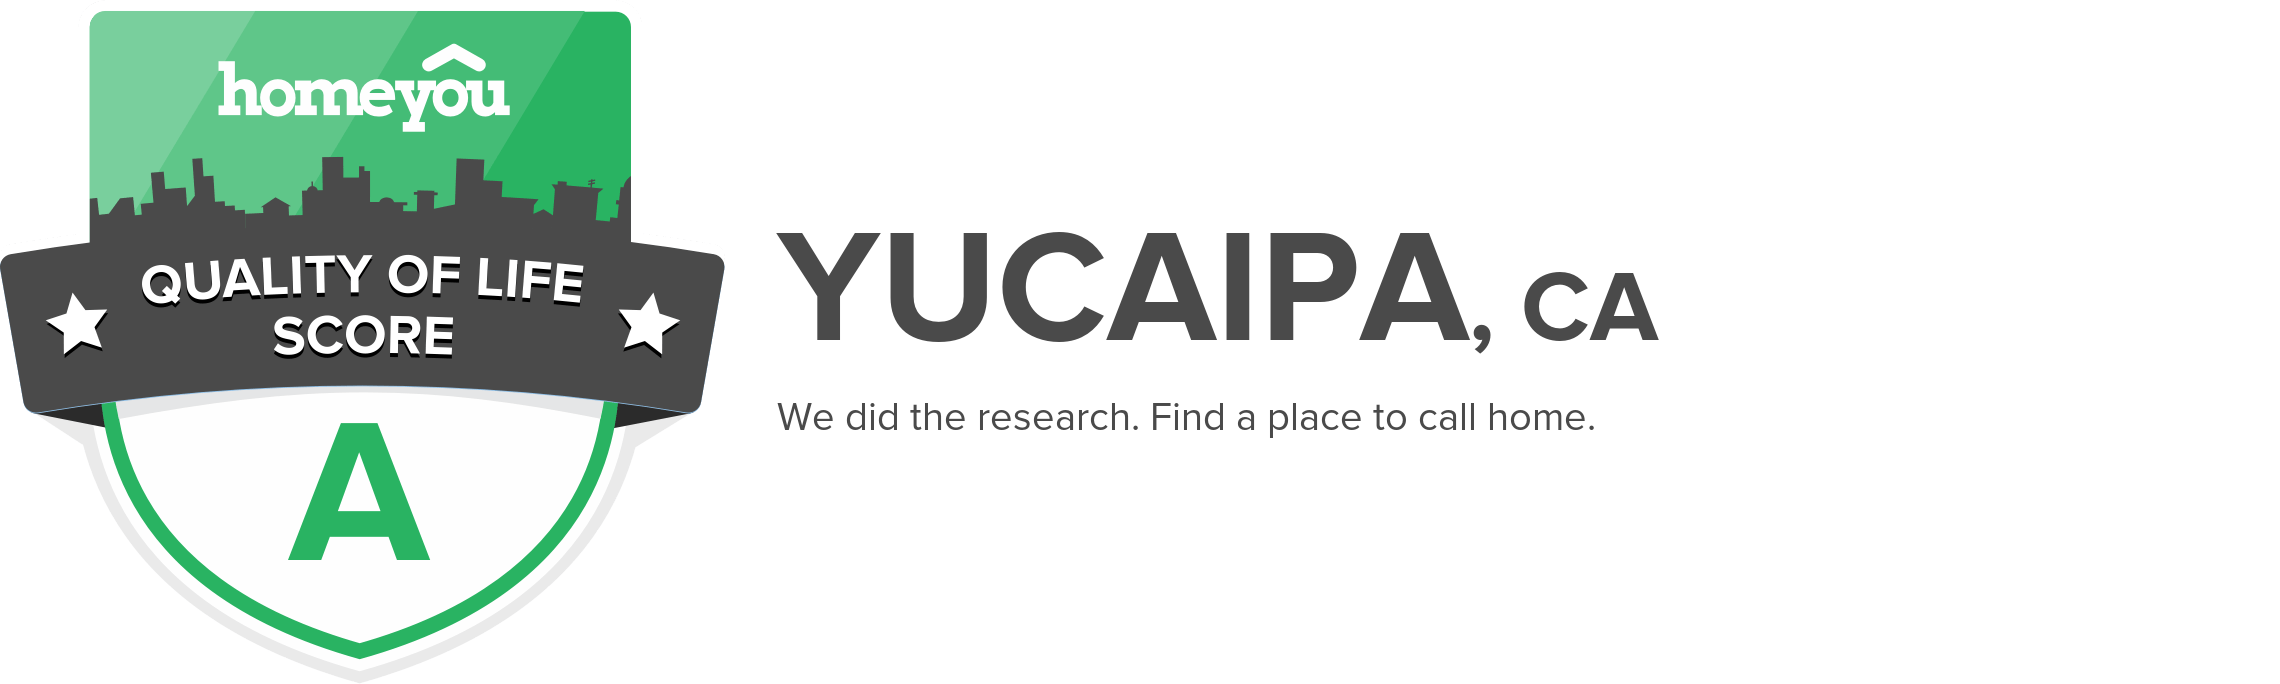 Yucaipa, CA